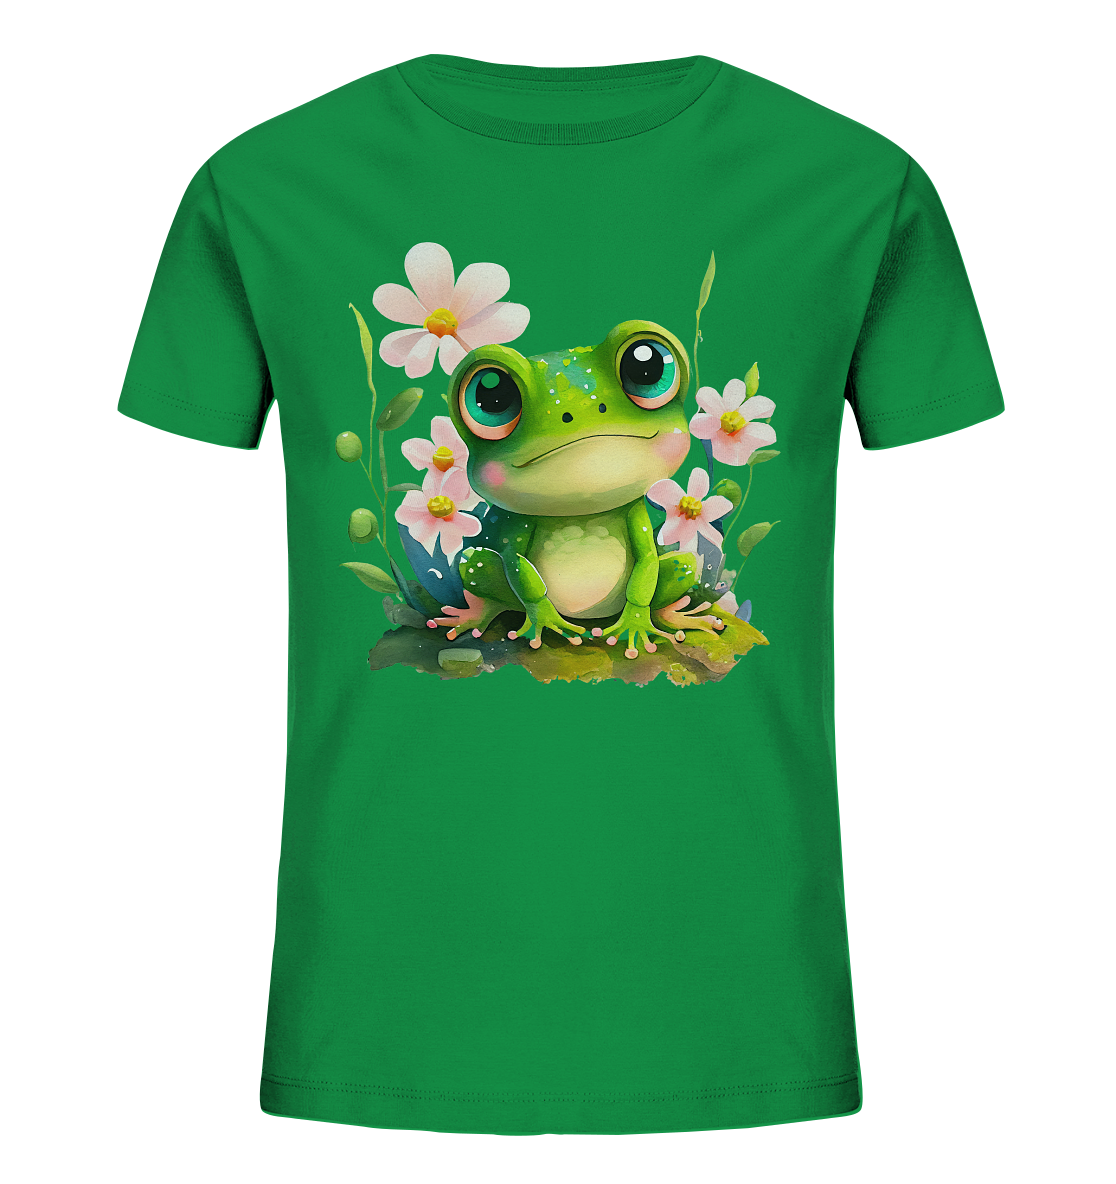 Cute Little Frog - Kids Organic Shirt